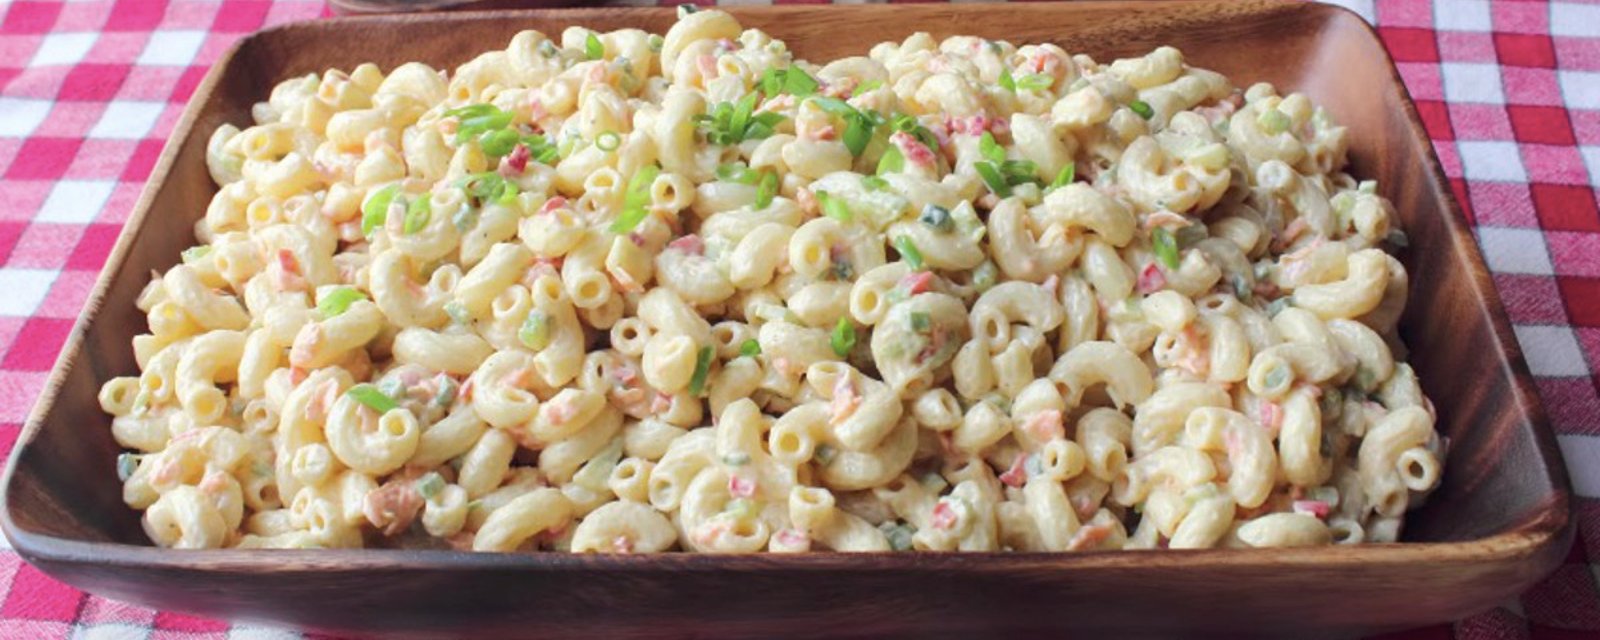 Comment préparer la plus délicieuse salade de macaroni! Une recette de chef, facile à reproduire! 